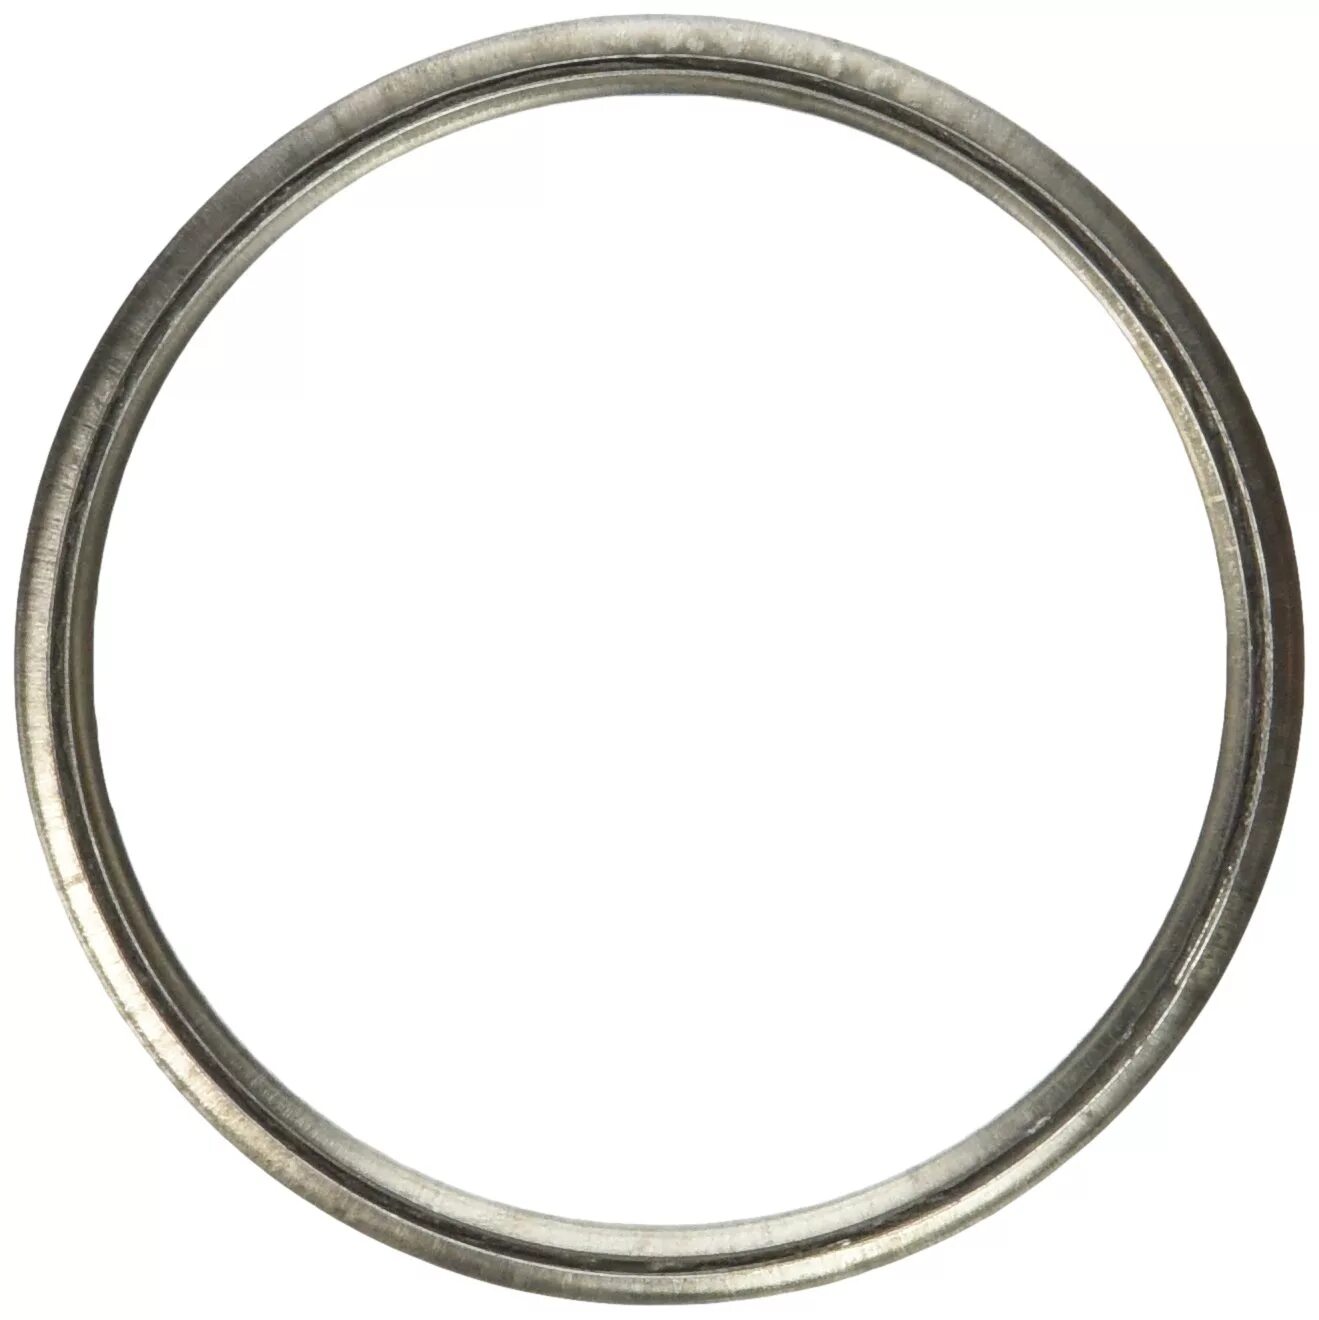 Большие кольца металлические. Металлическое кольцо. Стальное кольцо. Железное кольцо. Металлические кольца большого диаметра.